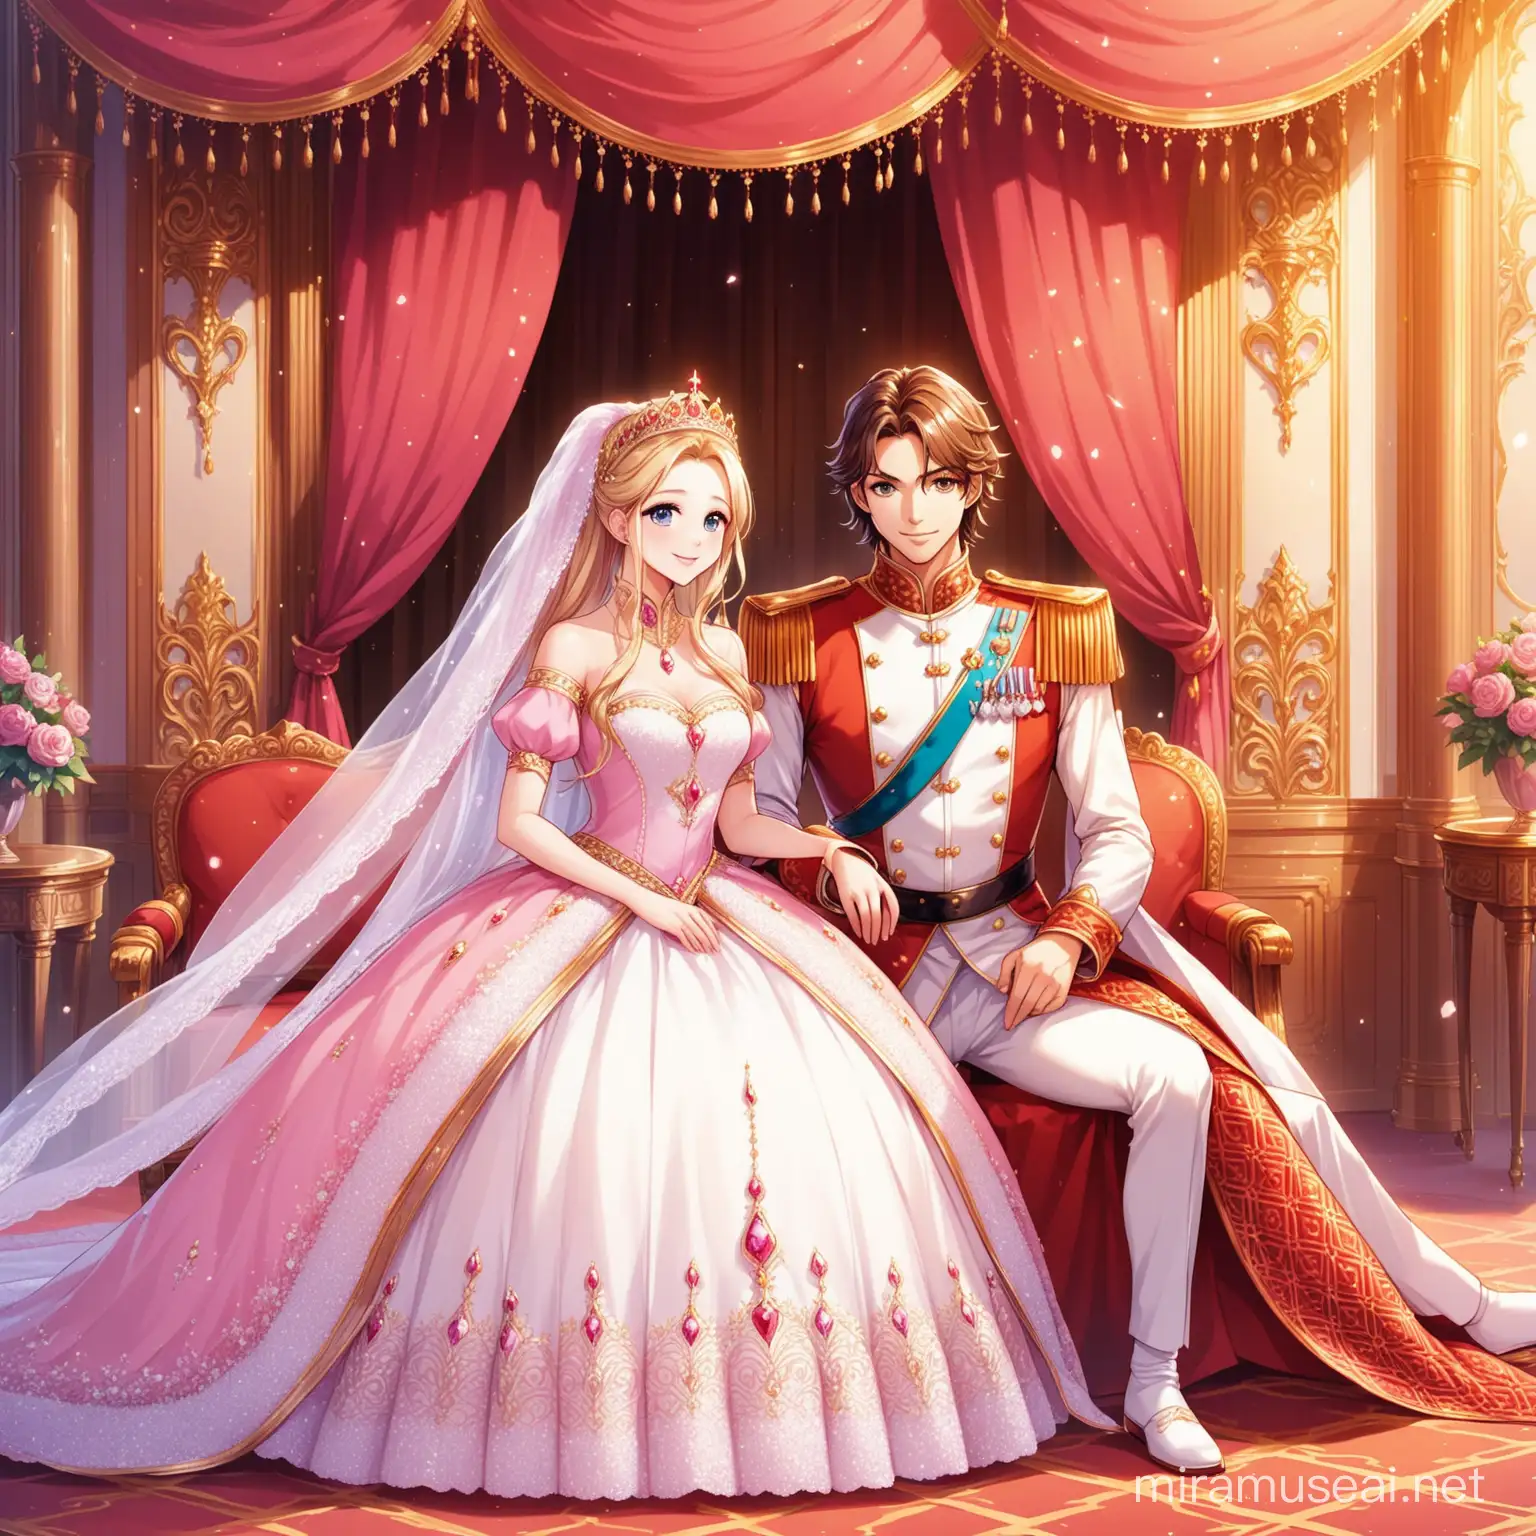 صورة الأمير مع الاميره في قصر الحب